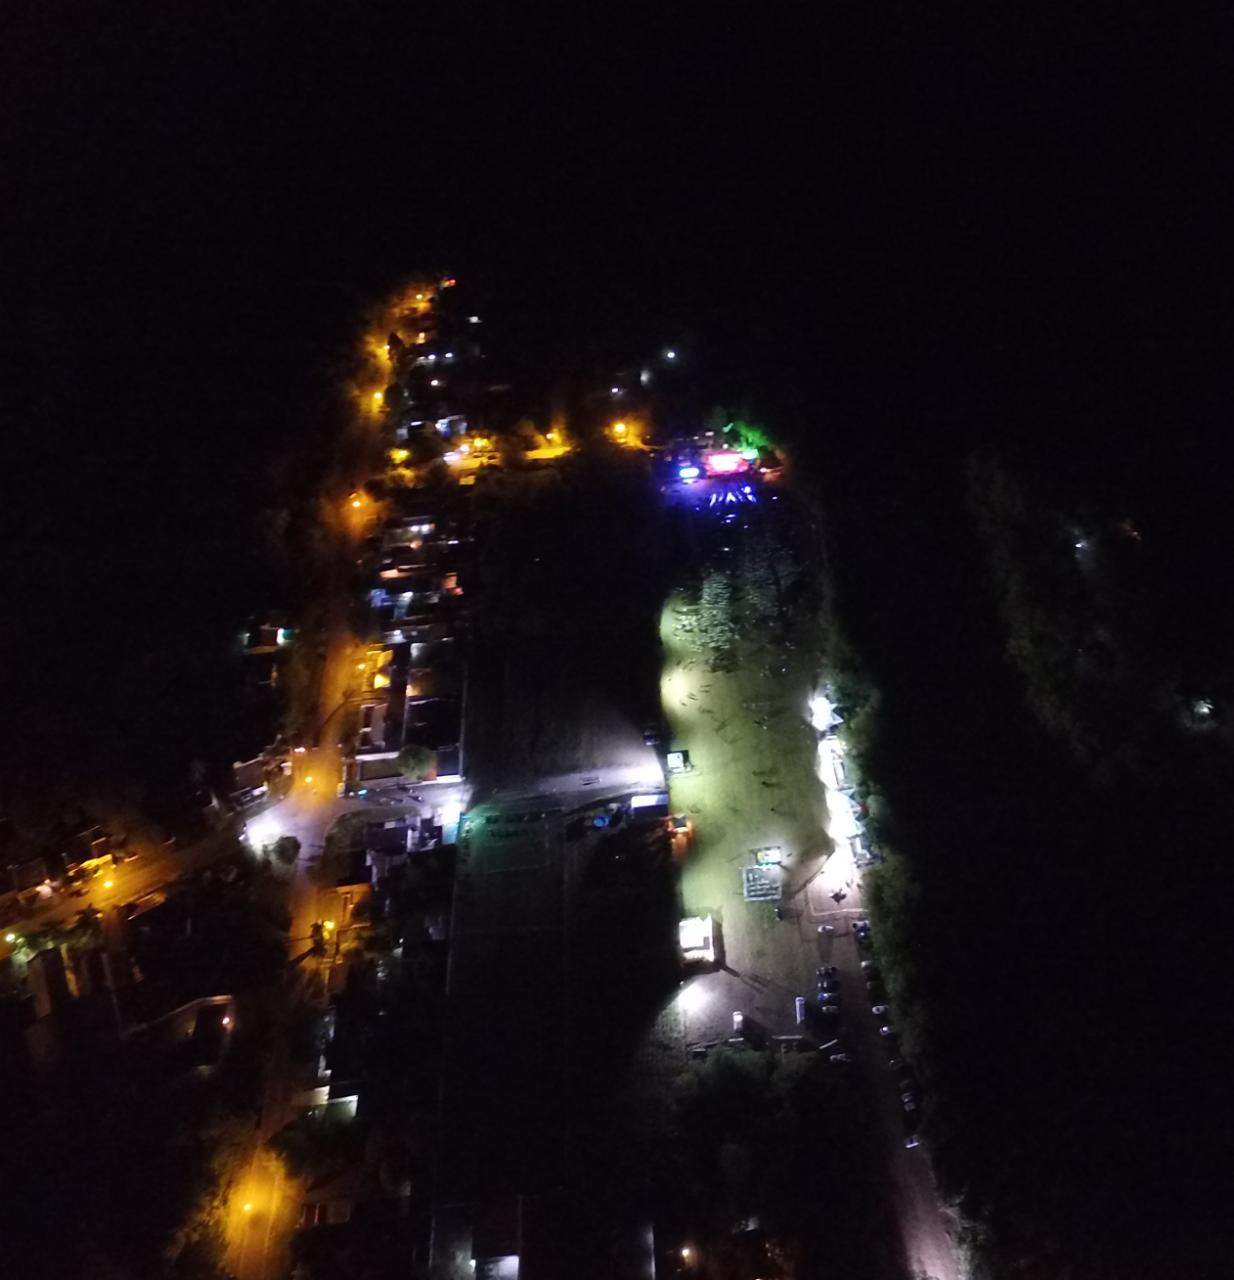 Imagen aerea en el final de la ultima noche. Nuestro barrio humilde de la zona sur de Parana